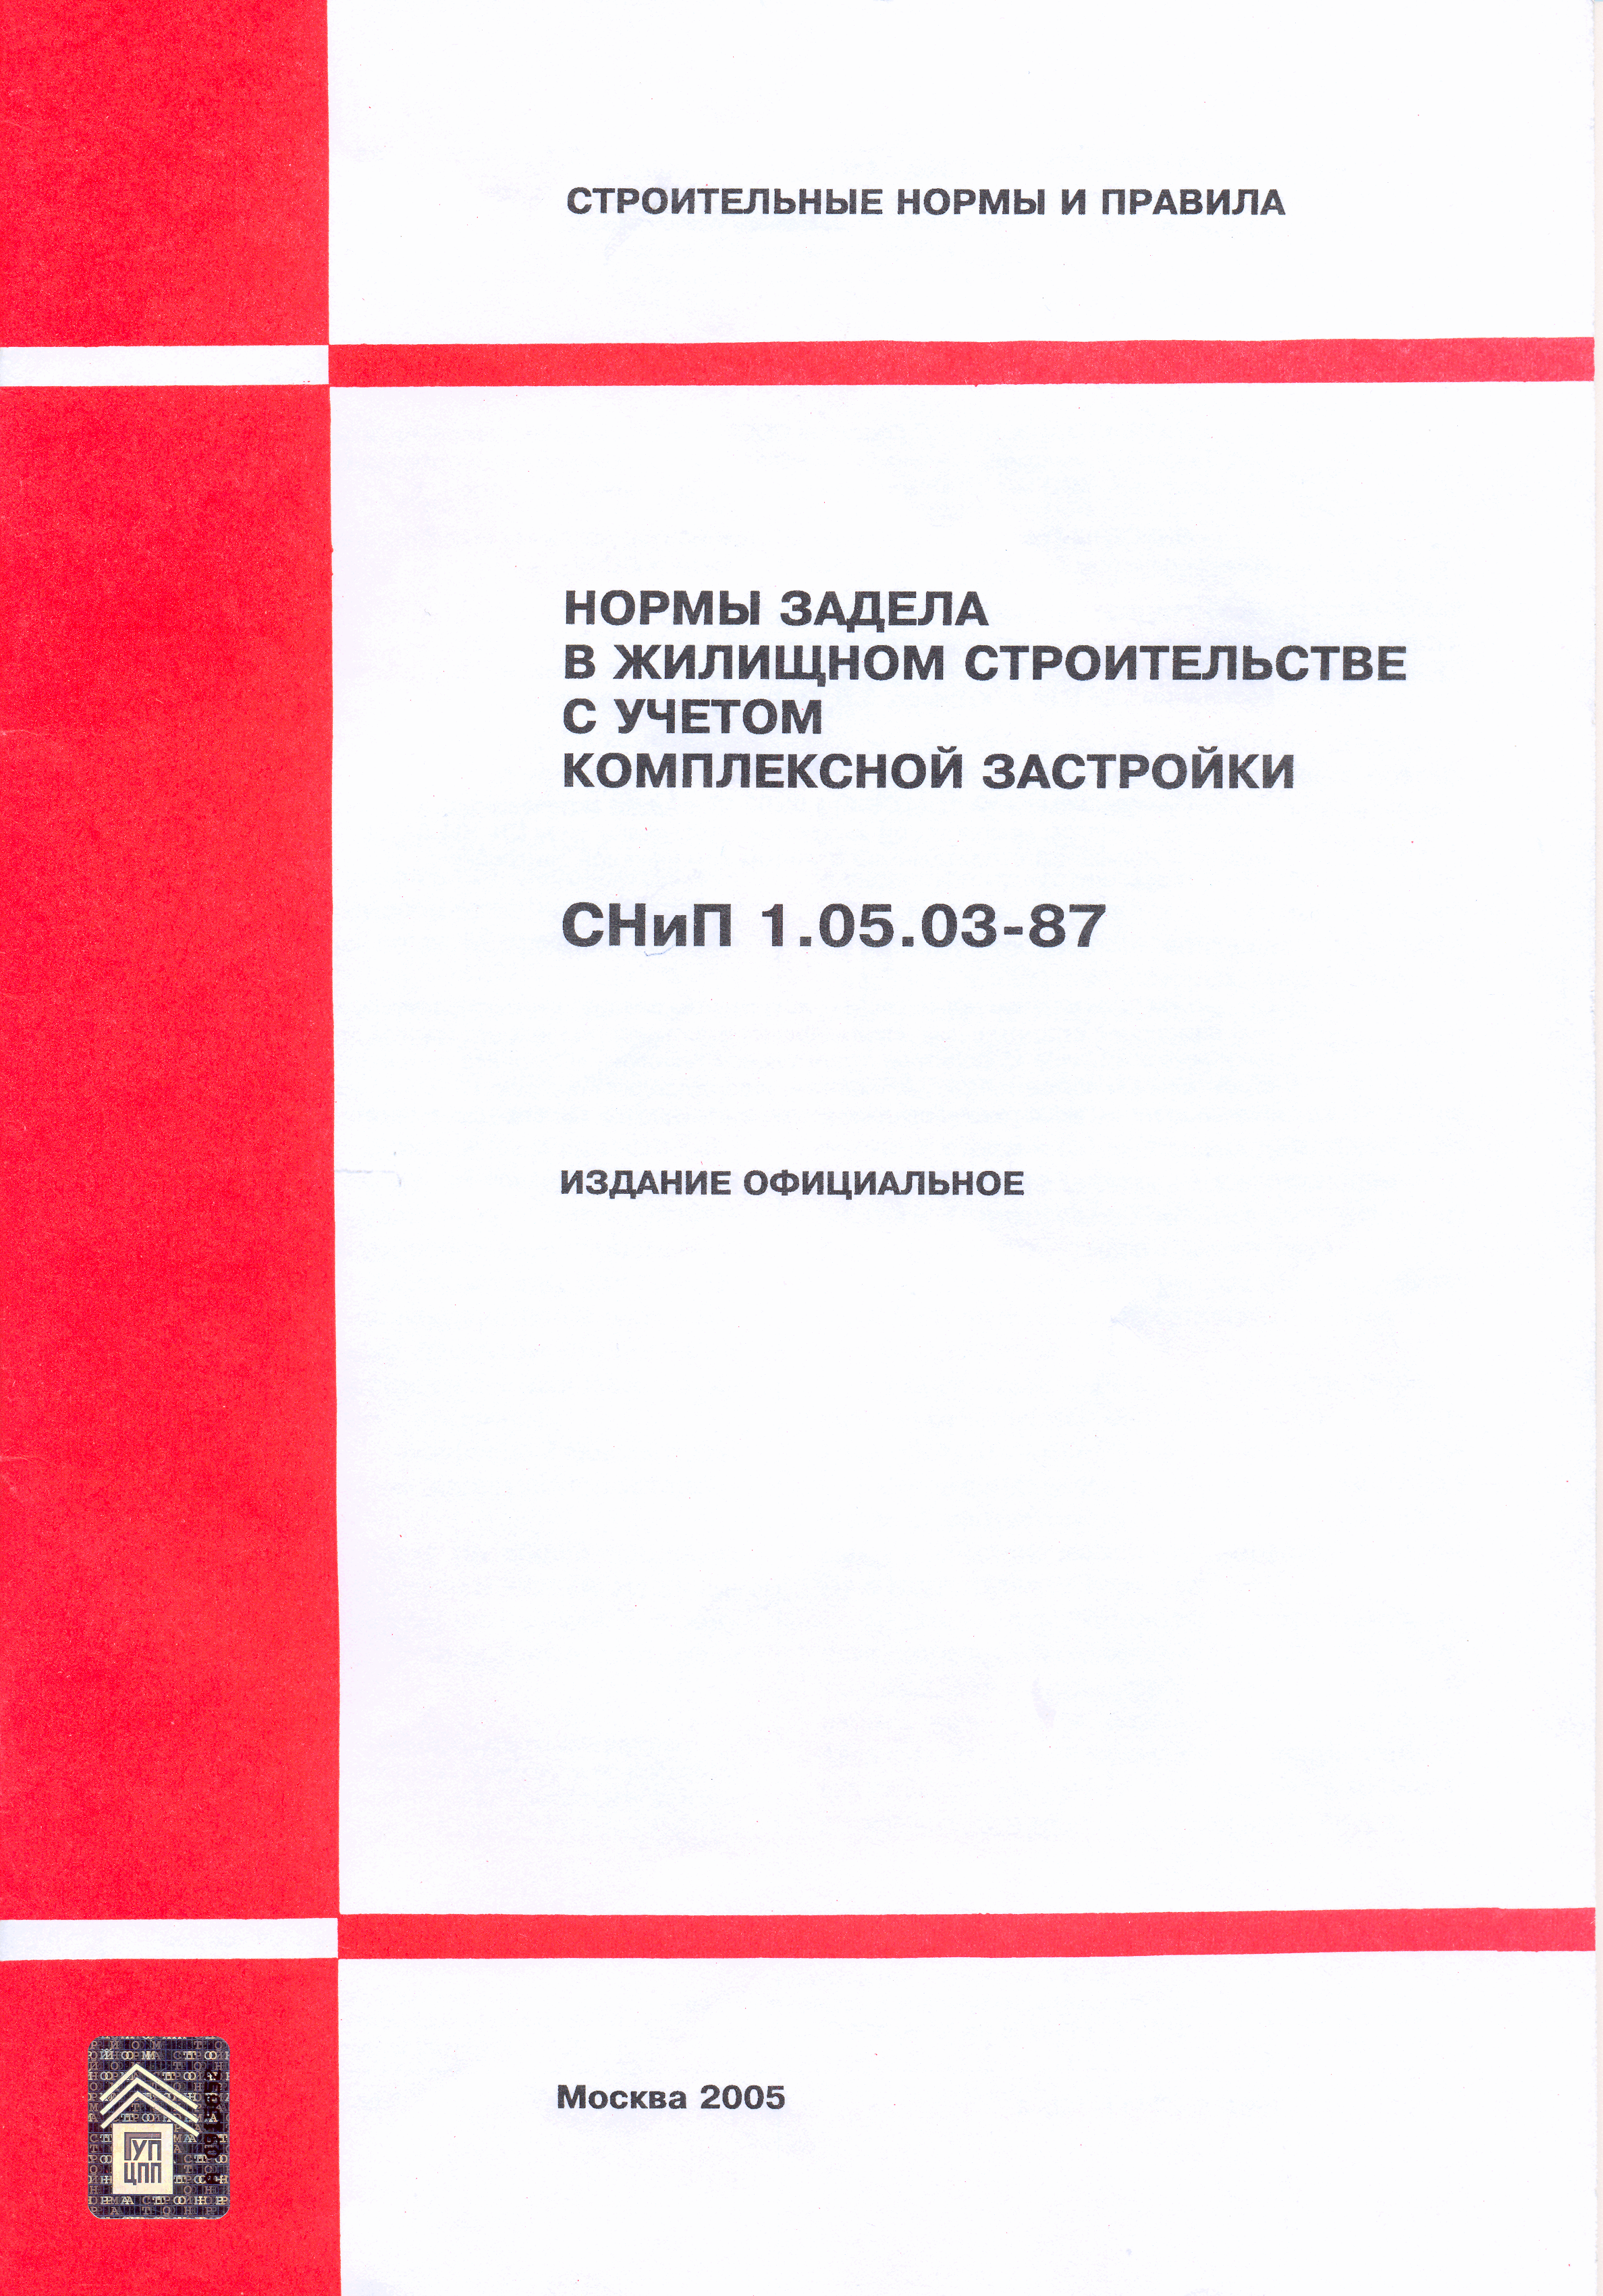 СНиП 1.05.03-87